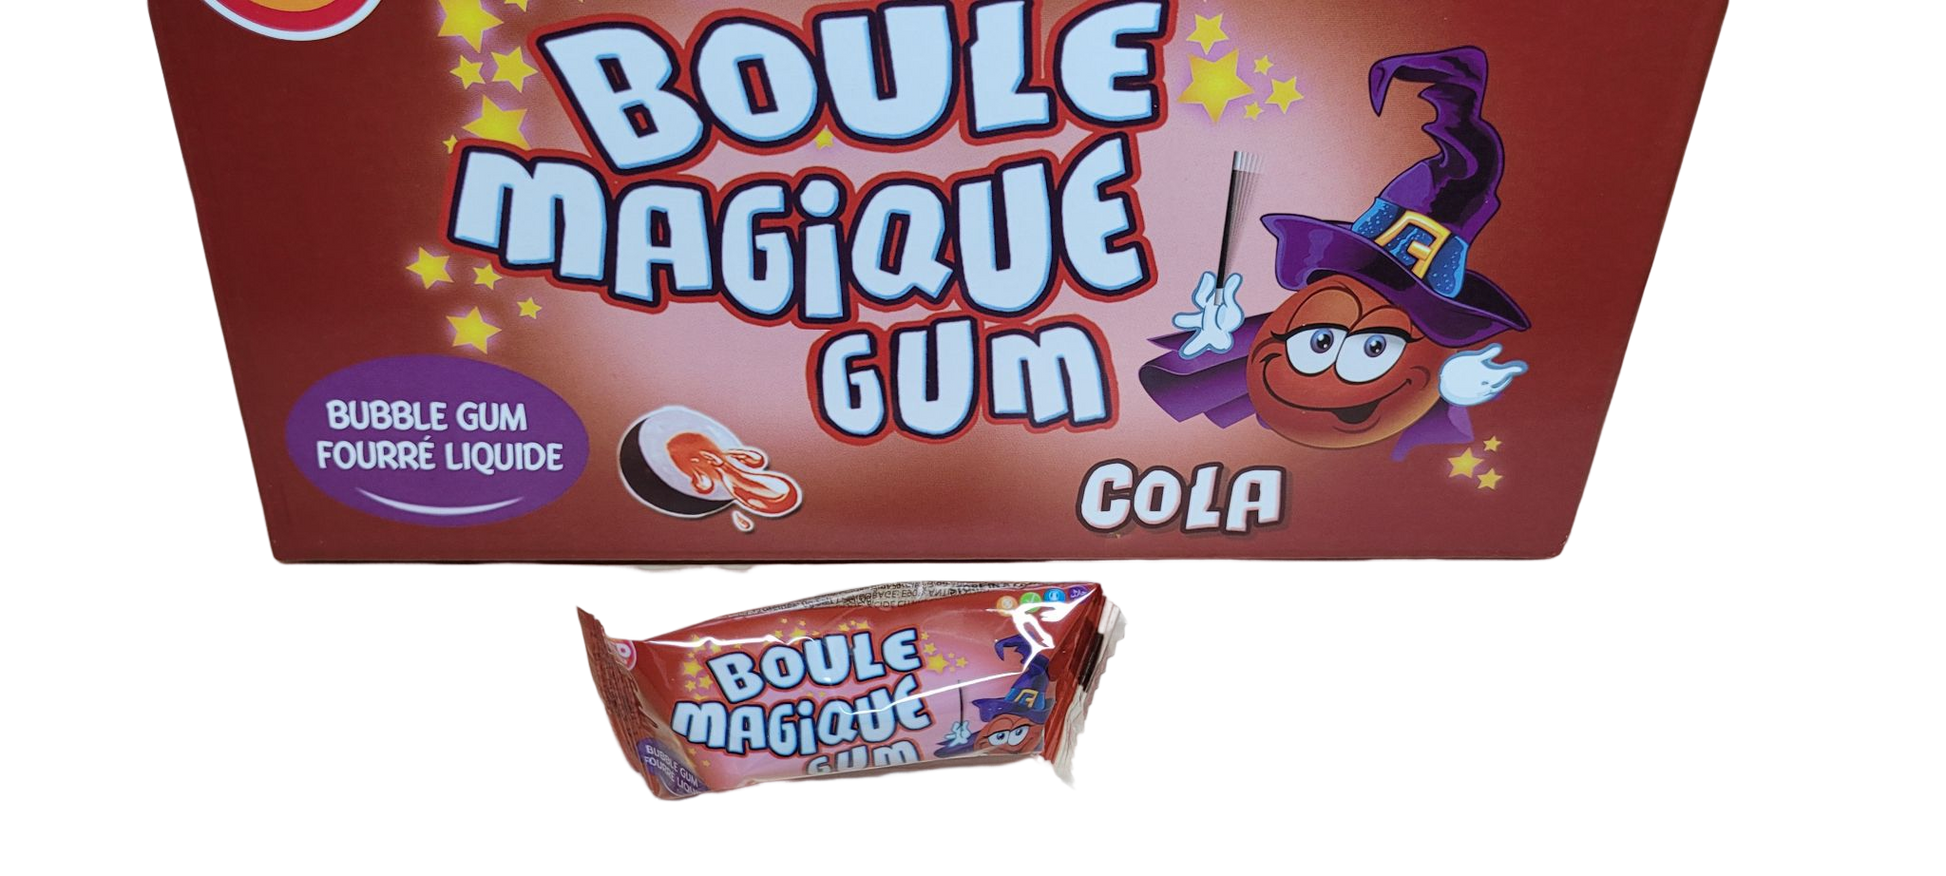 Boule magique gum Cola